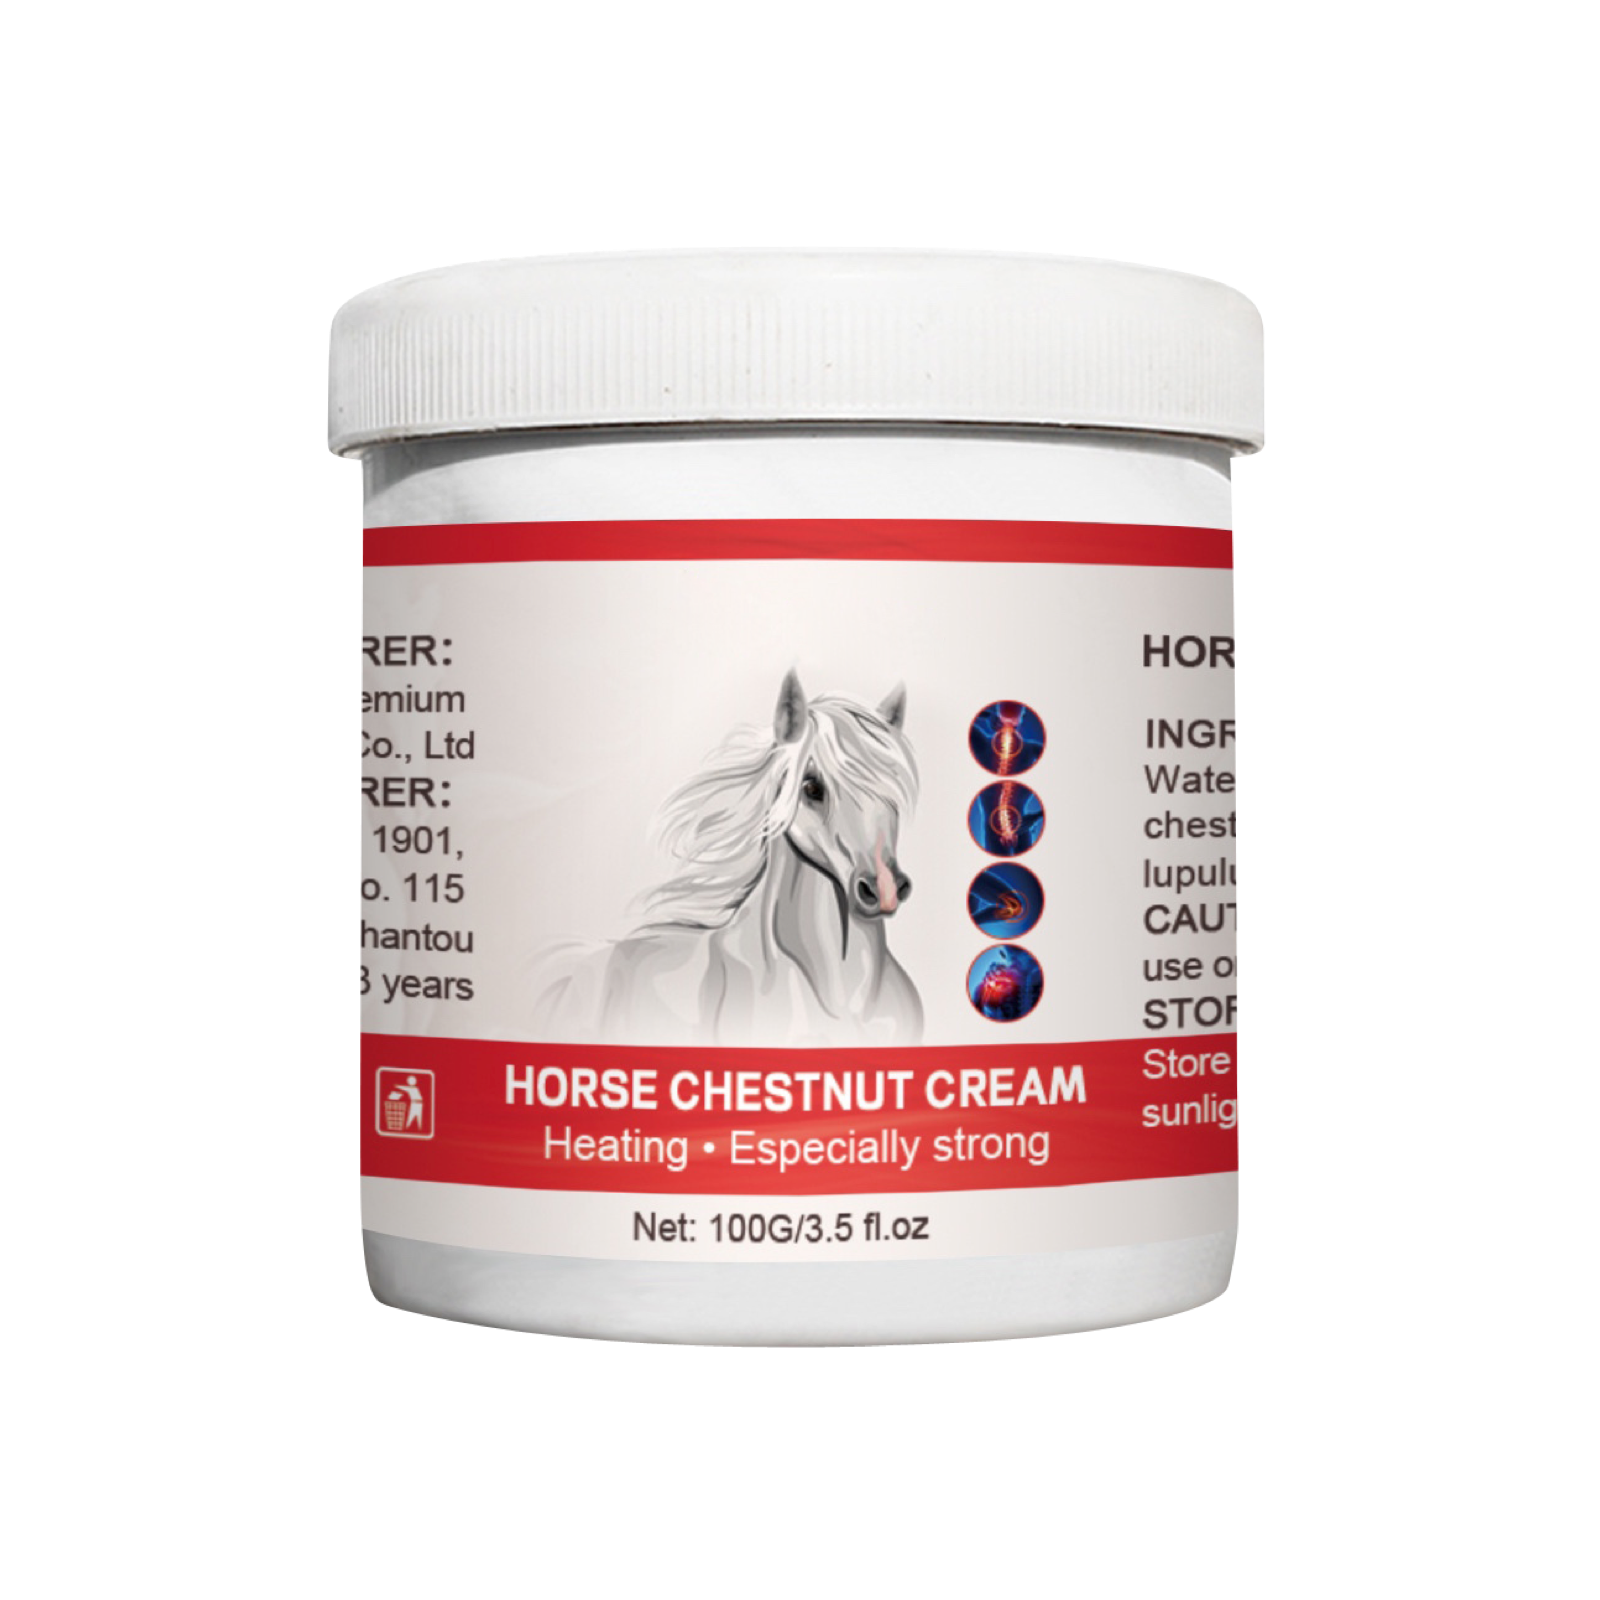 Horse Chestnut Cream